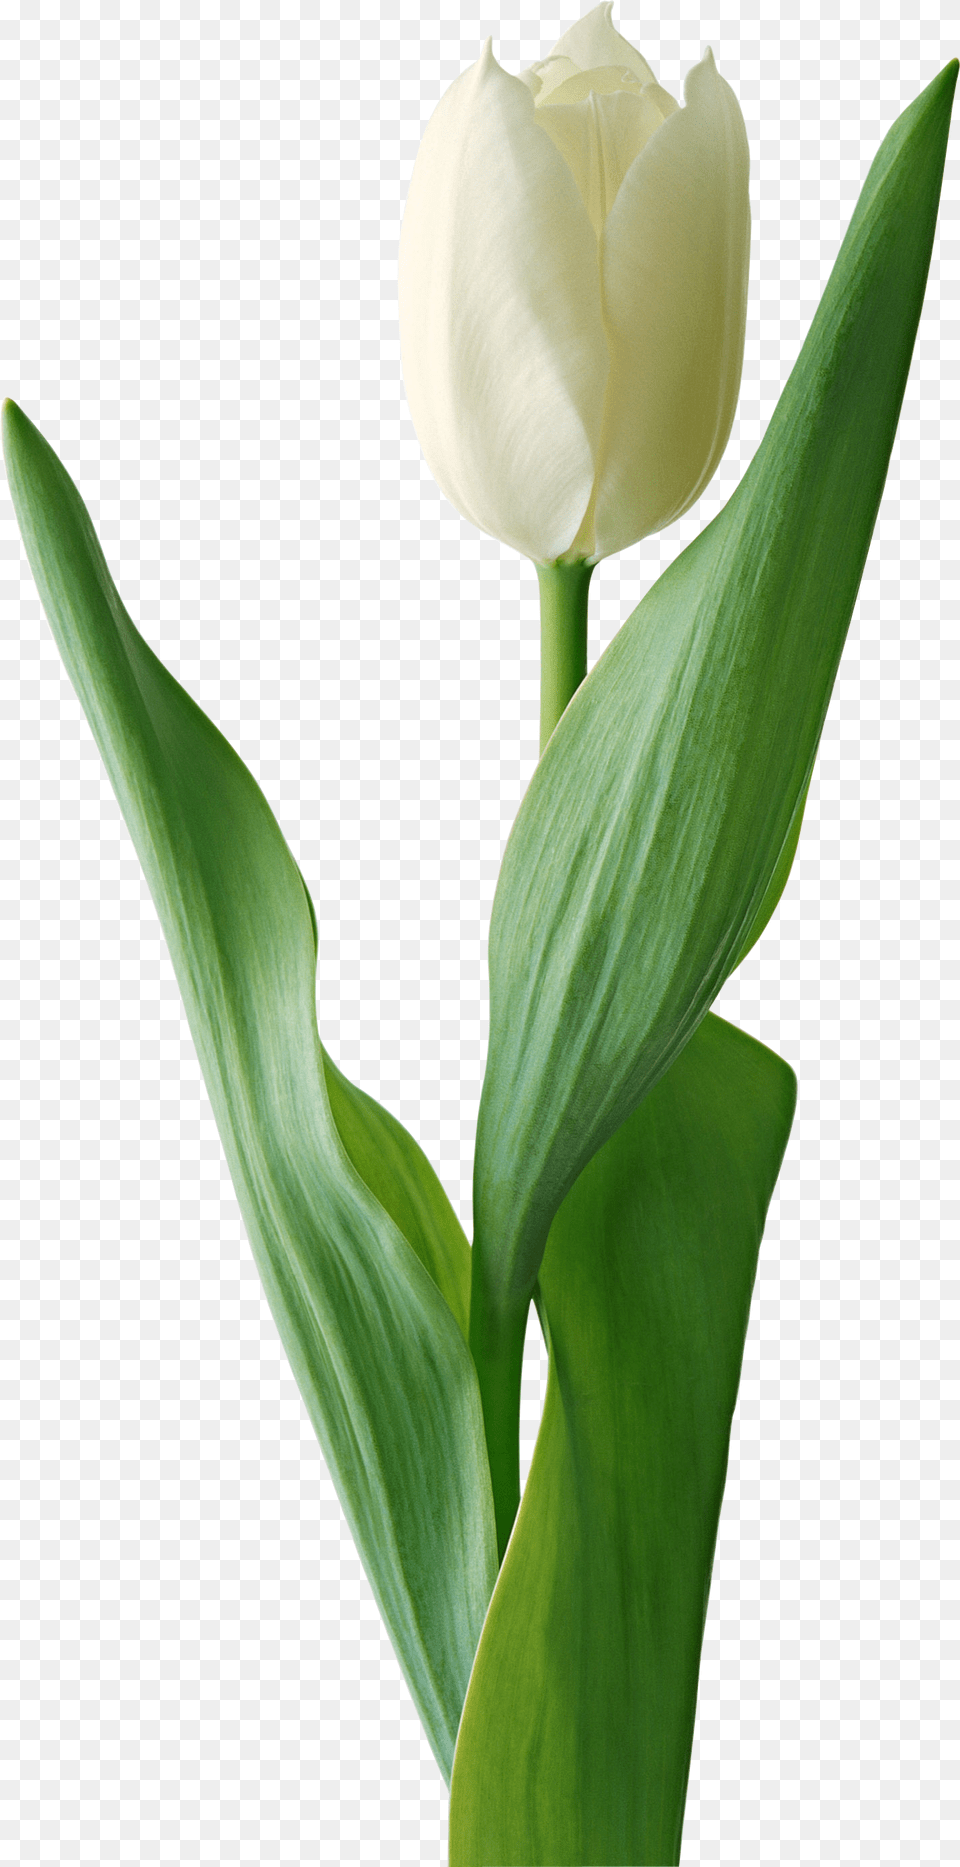 Tulip, Flower, Plant, Petal Png Image